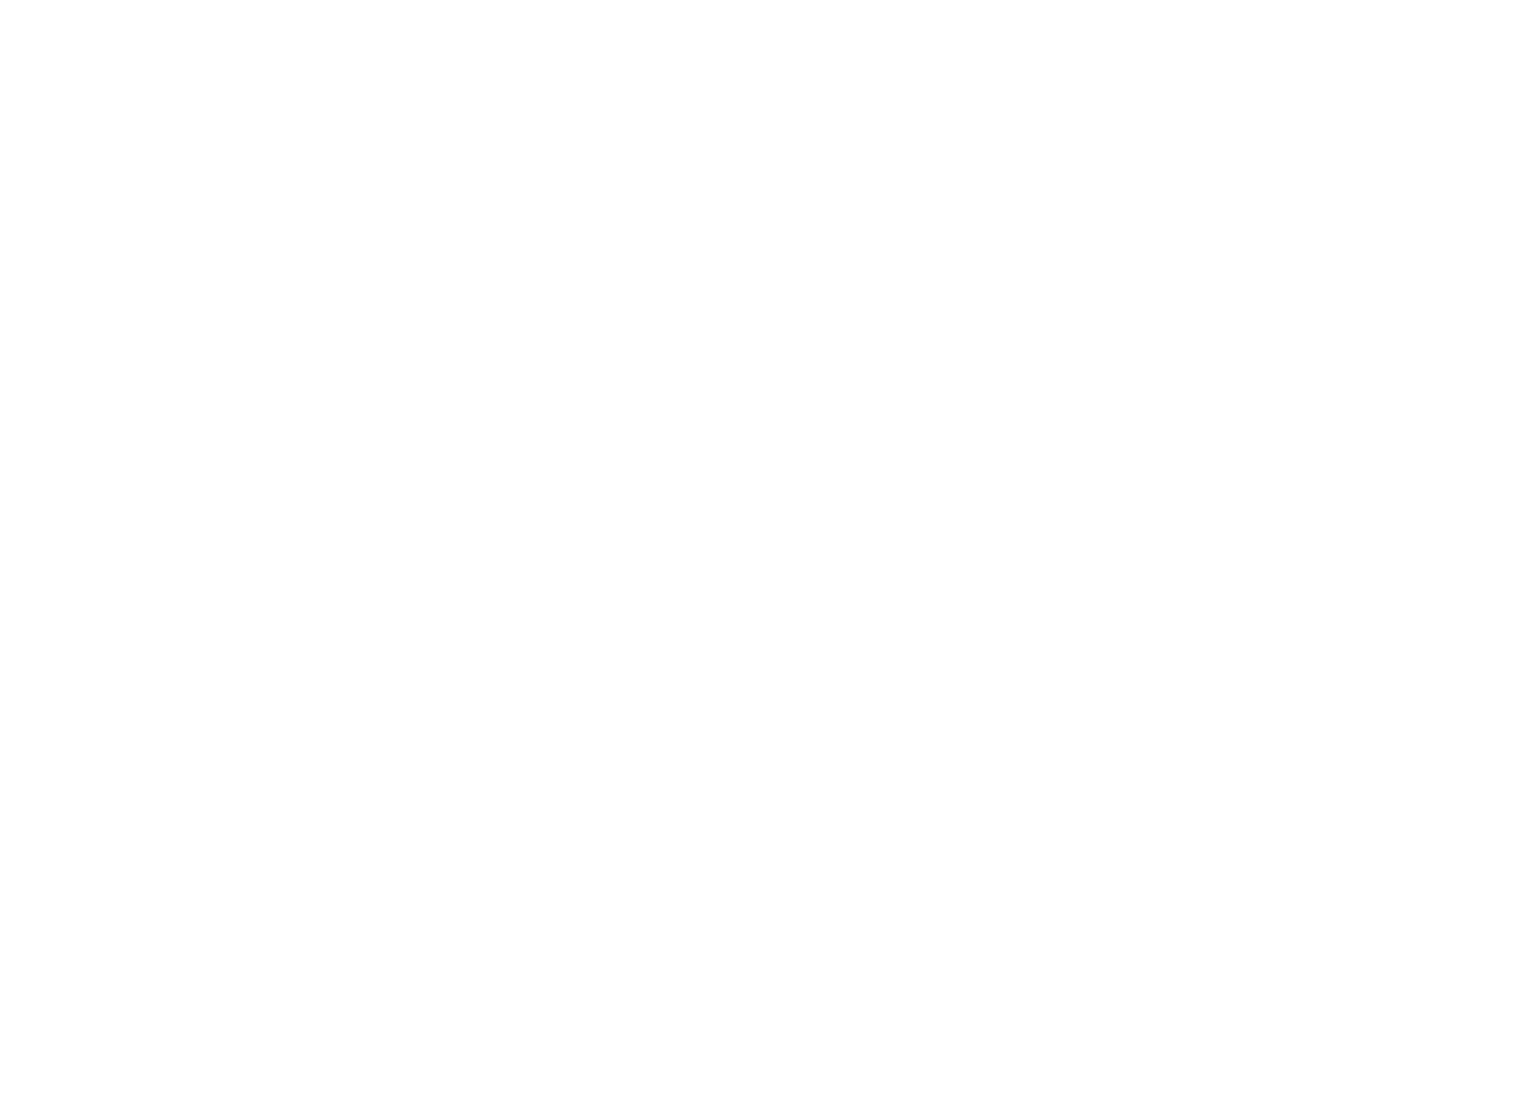 Lilium logo pour fonds sombres (PNG transparent)